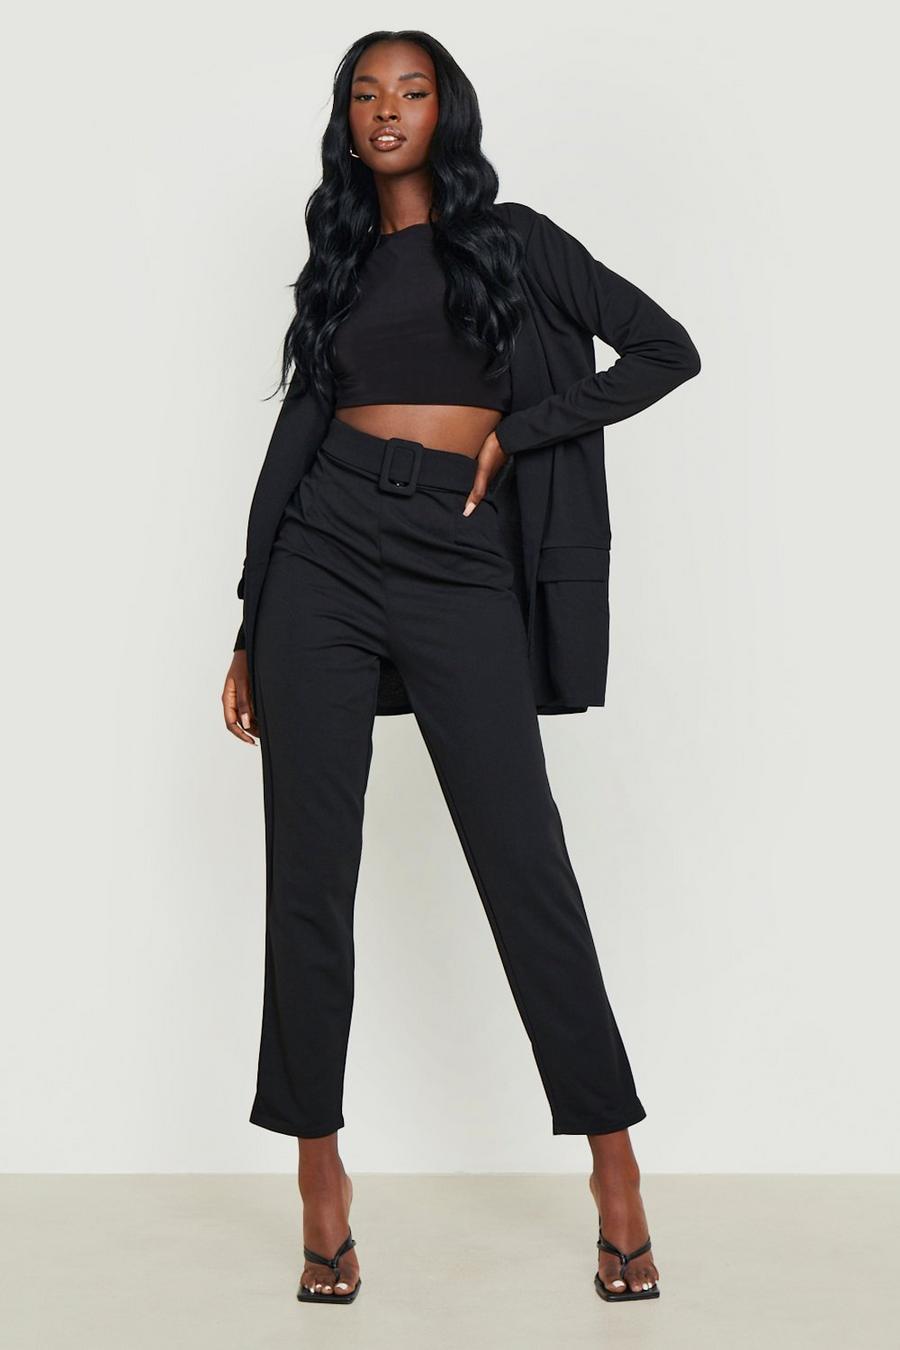 Black noir Blazer & Self Fabric Trouser Suit Set